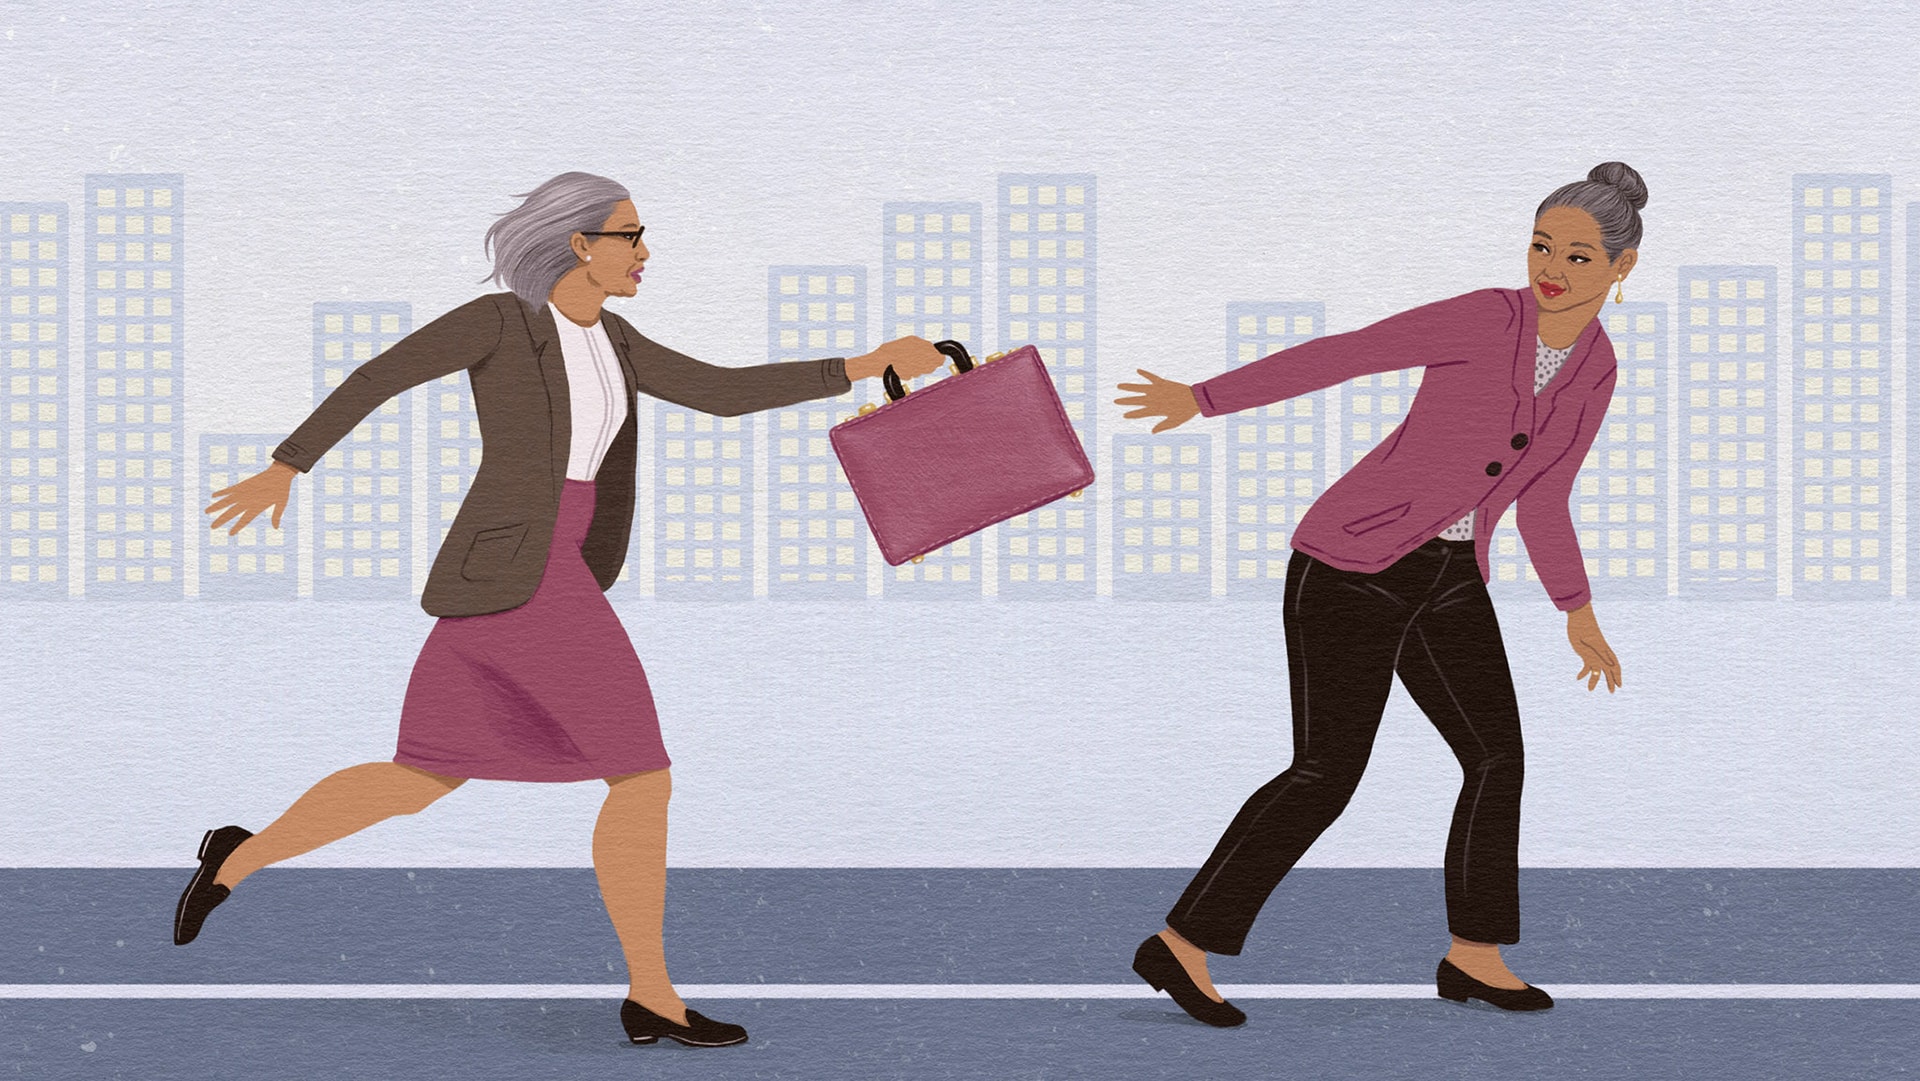 插圖顯示一位女企業東主將公事包傳遞給另一位女企業東主，好像在接力賽中。